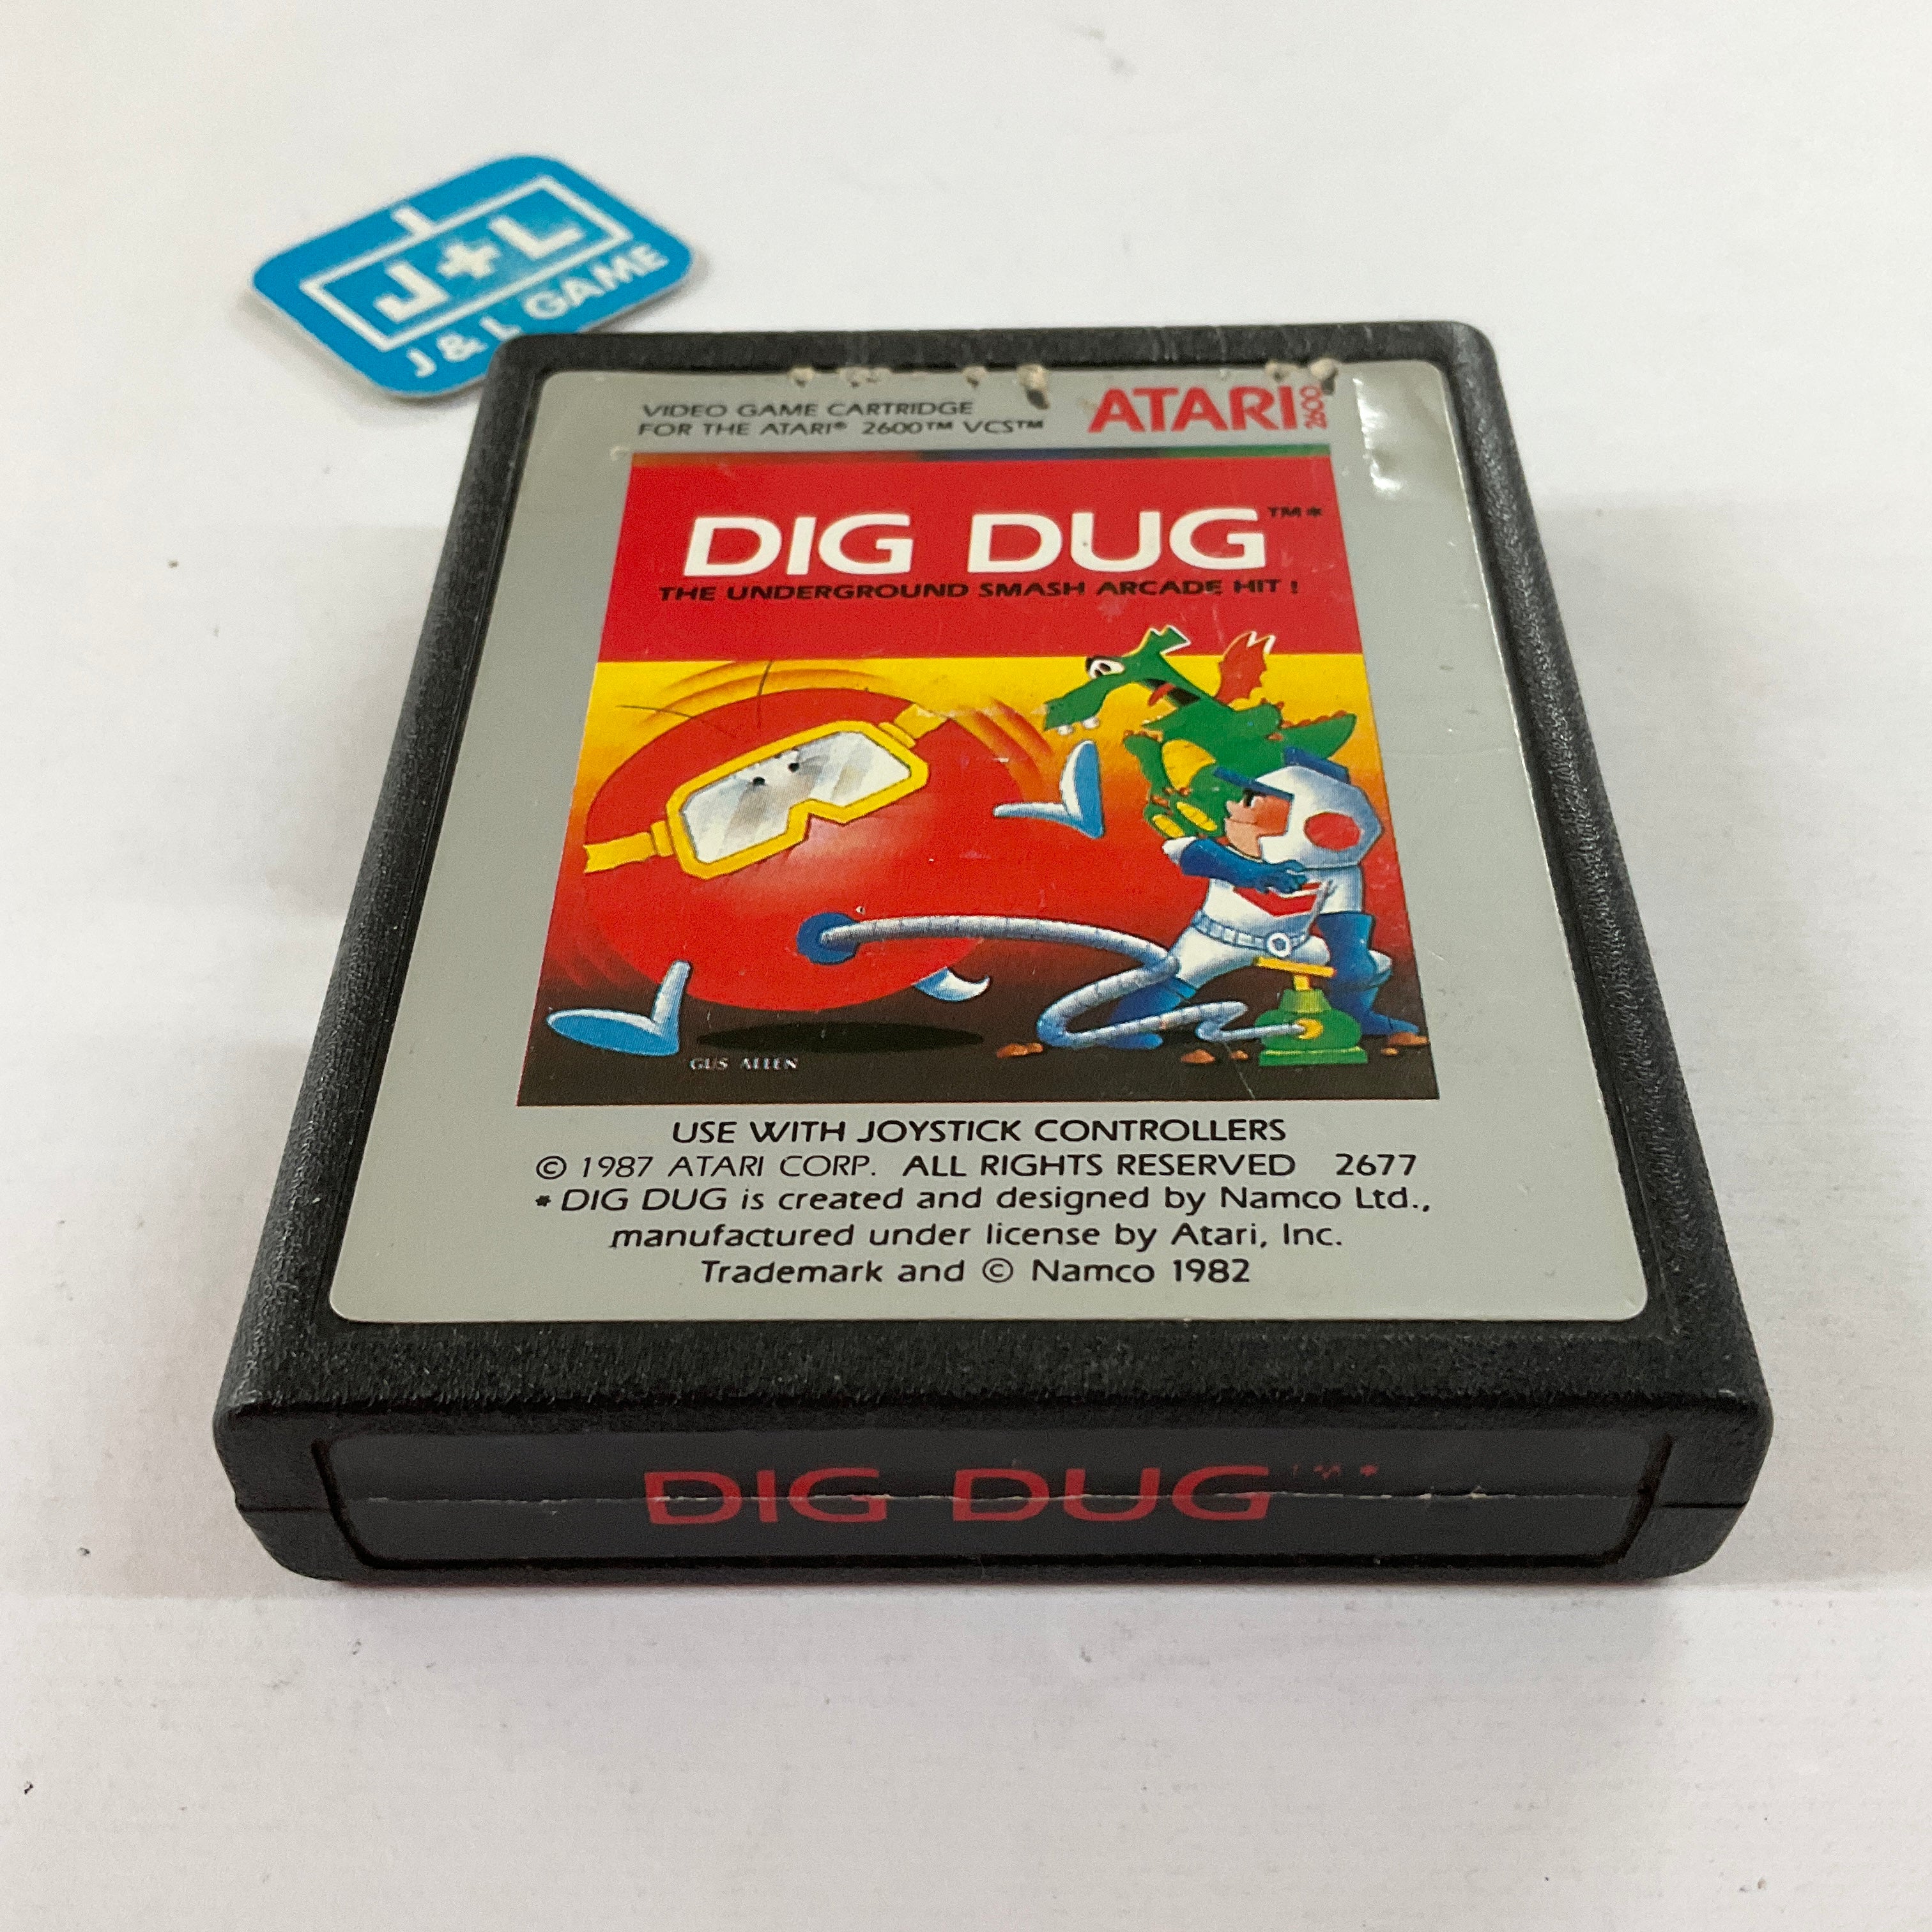 Dig Dug - Atari 2600 [Pre-Owned] Video Games Atari Inc.   